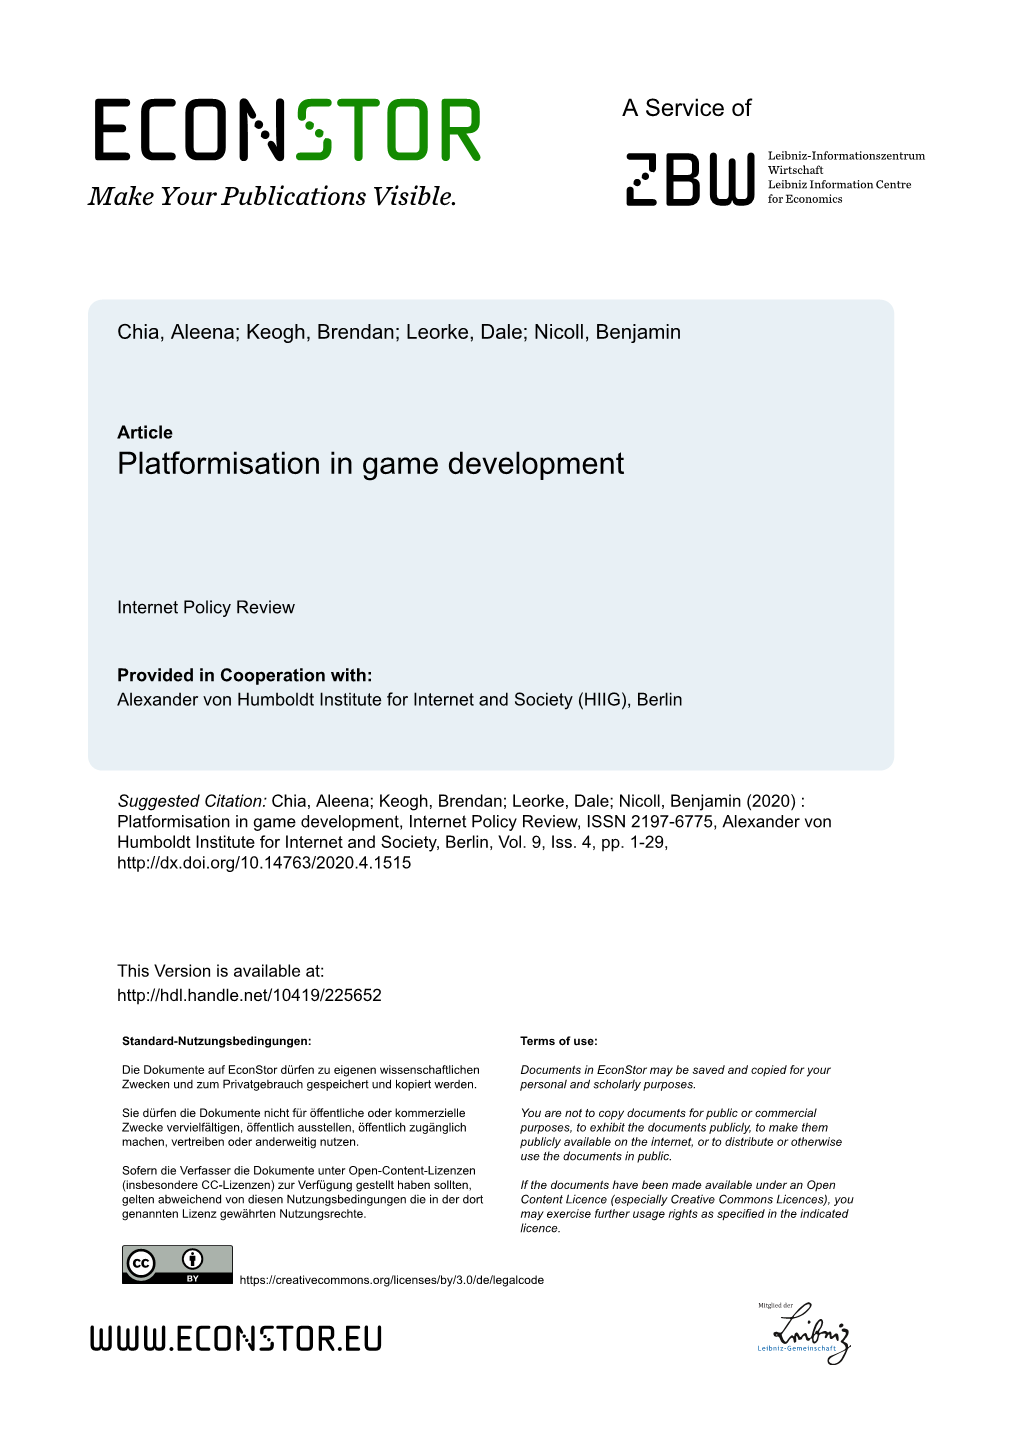 Platformisation in Game Development